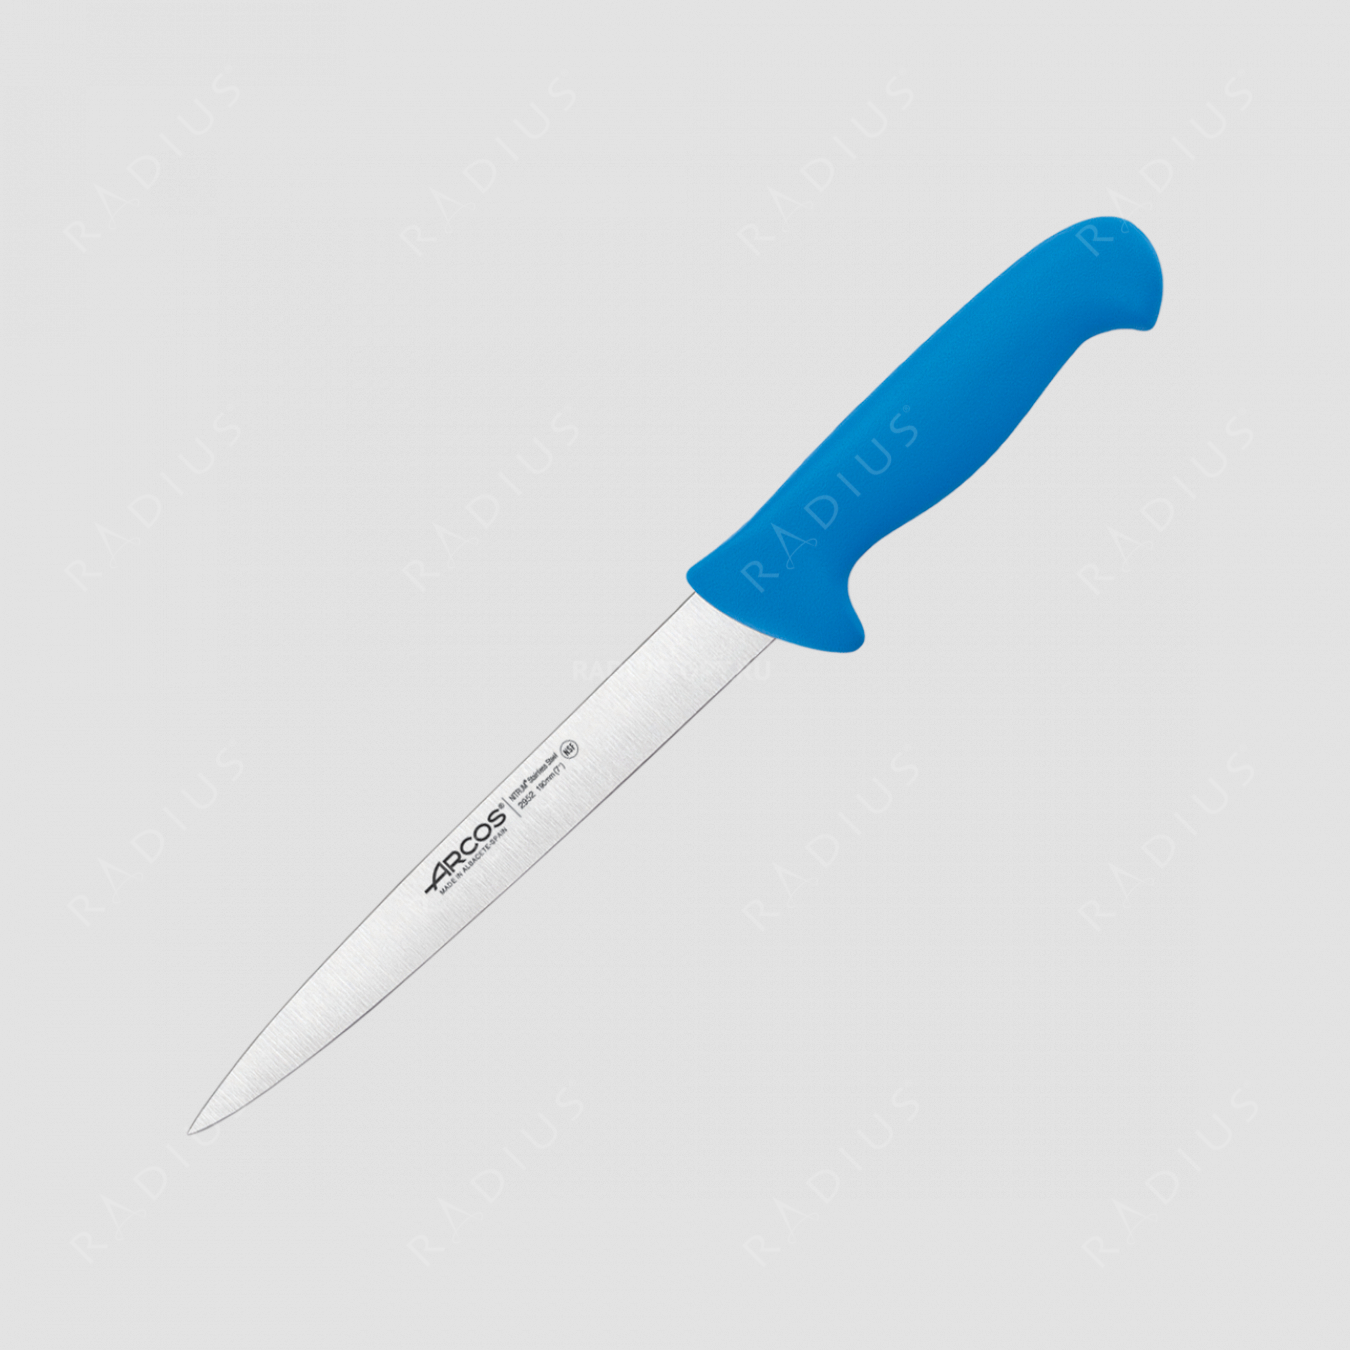 Нож кухонный для нарезки филе 19 см, рукоять - голубая, серия 2900, ARCOS, Испания